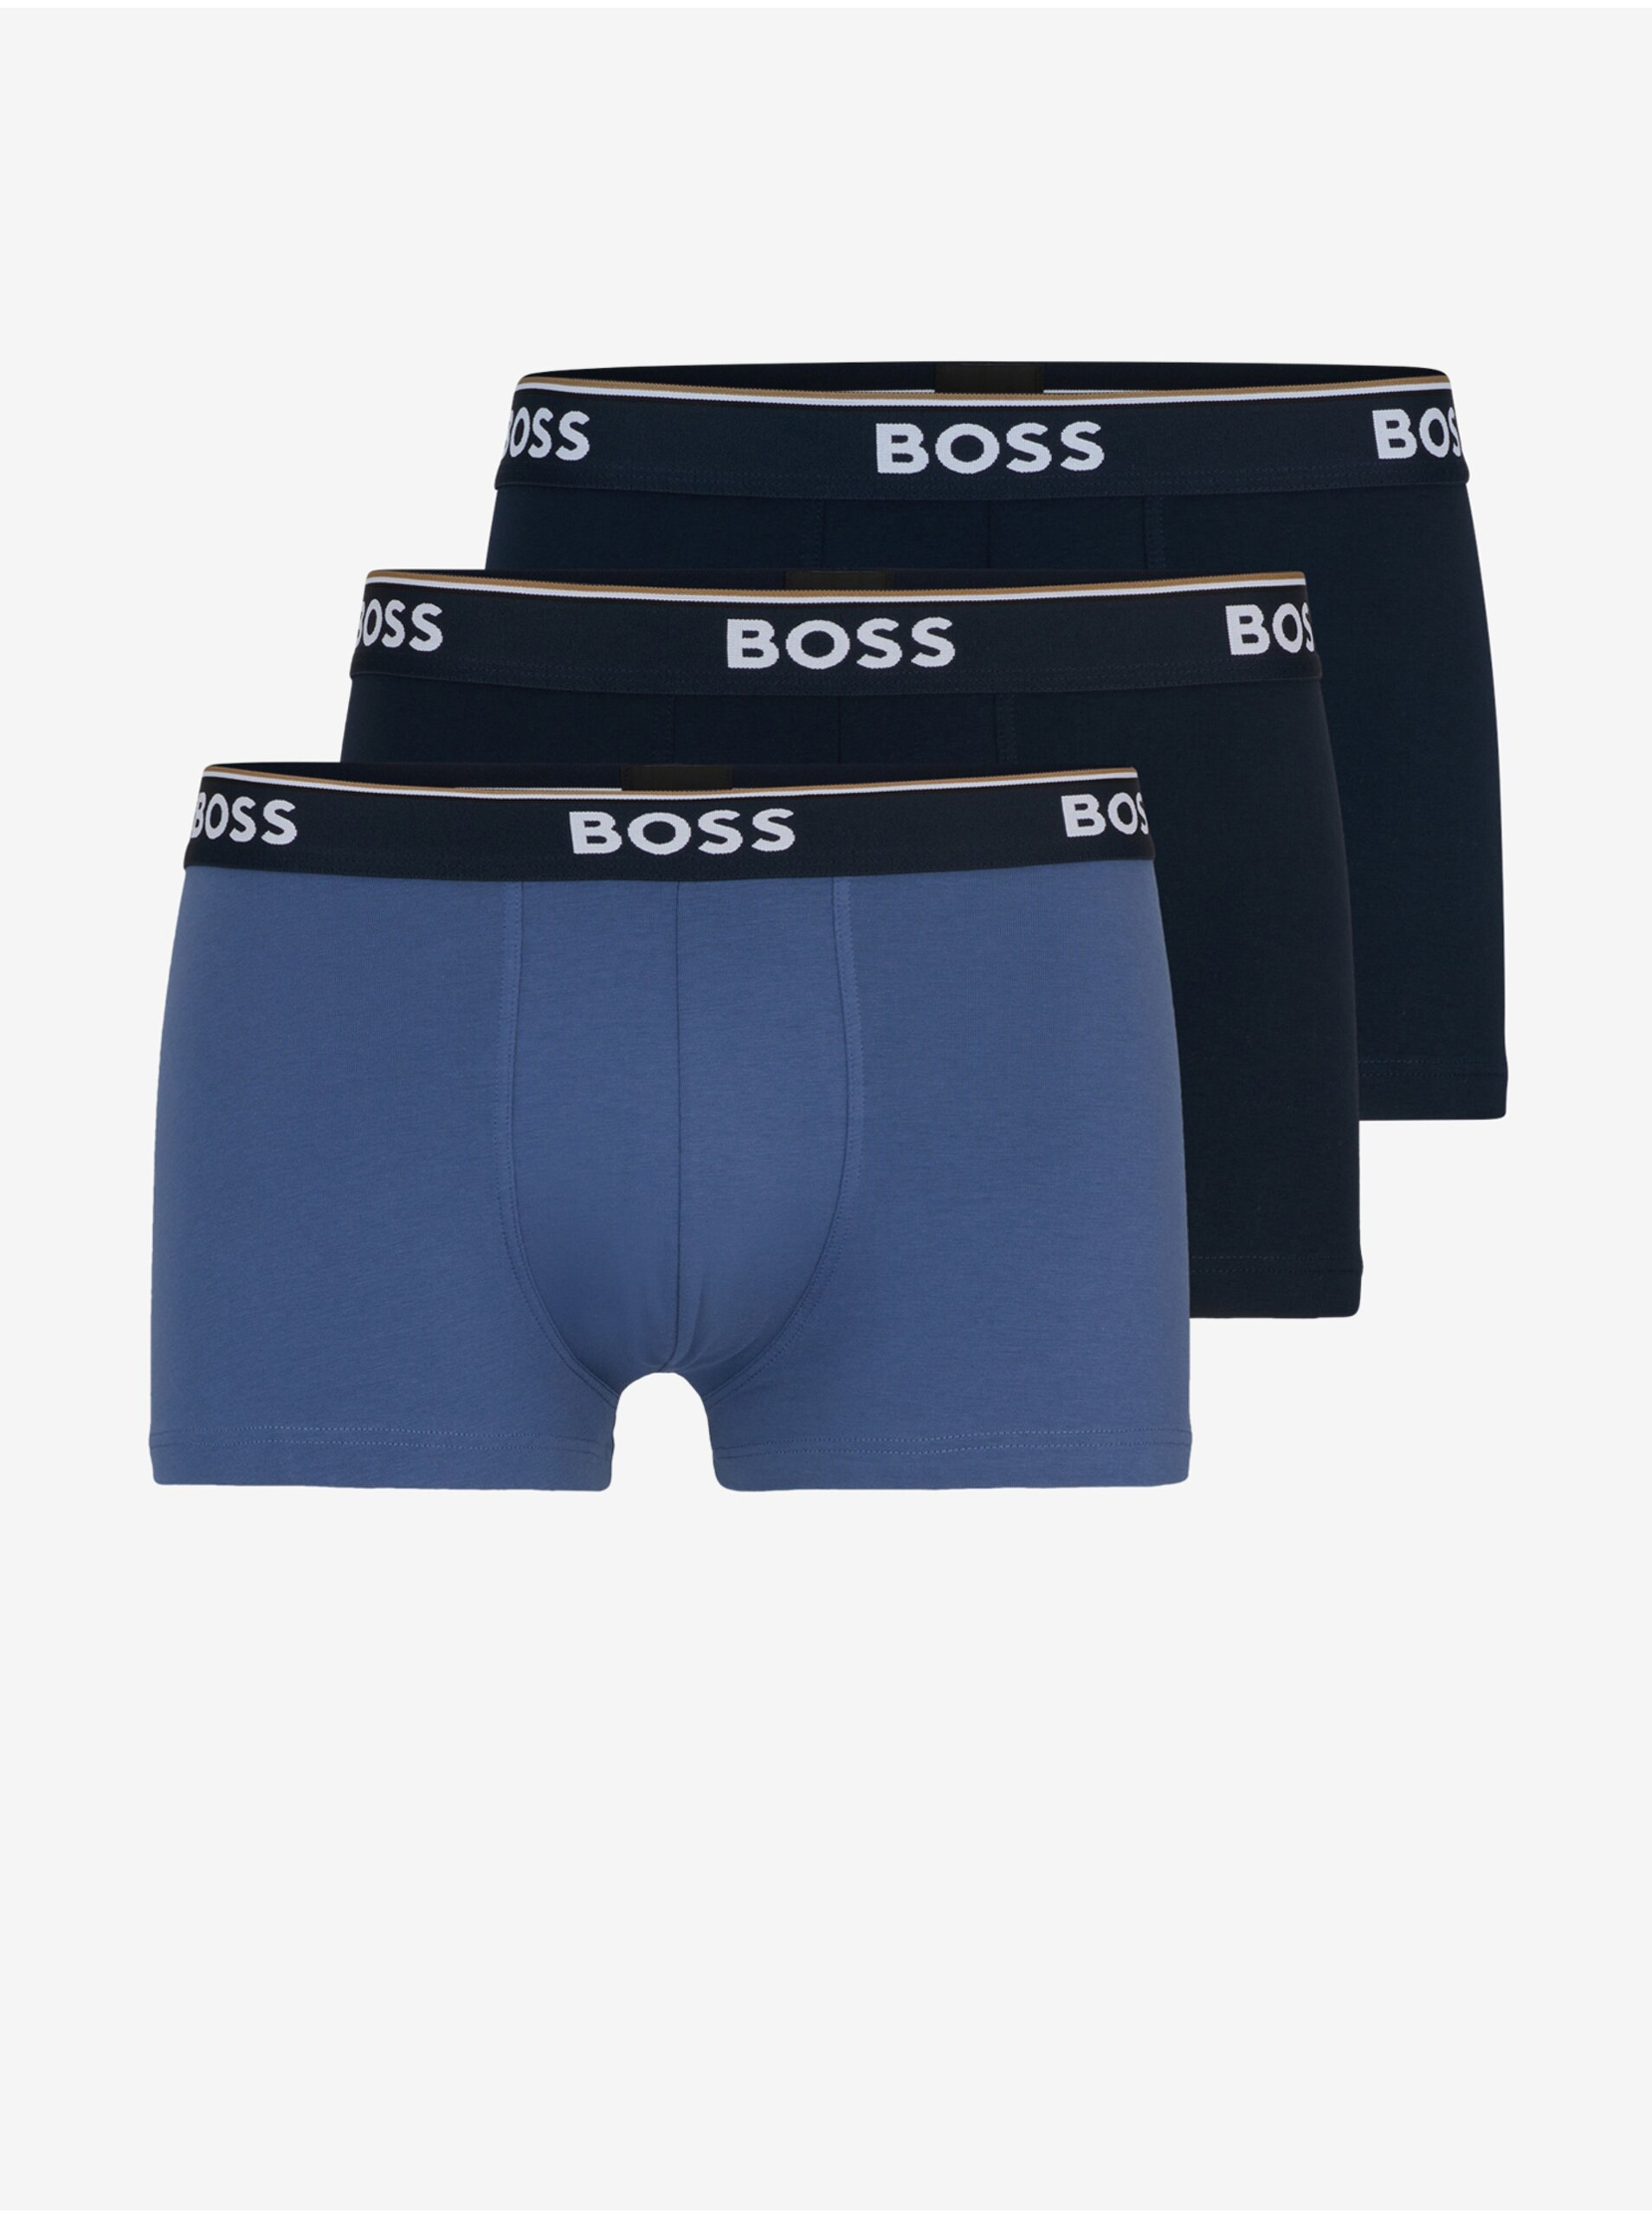 Levně Sada tří pánských boxerek v modré a černé barvě BOSS